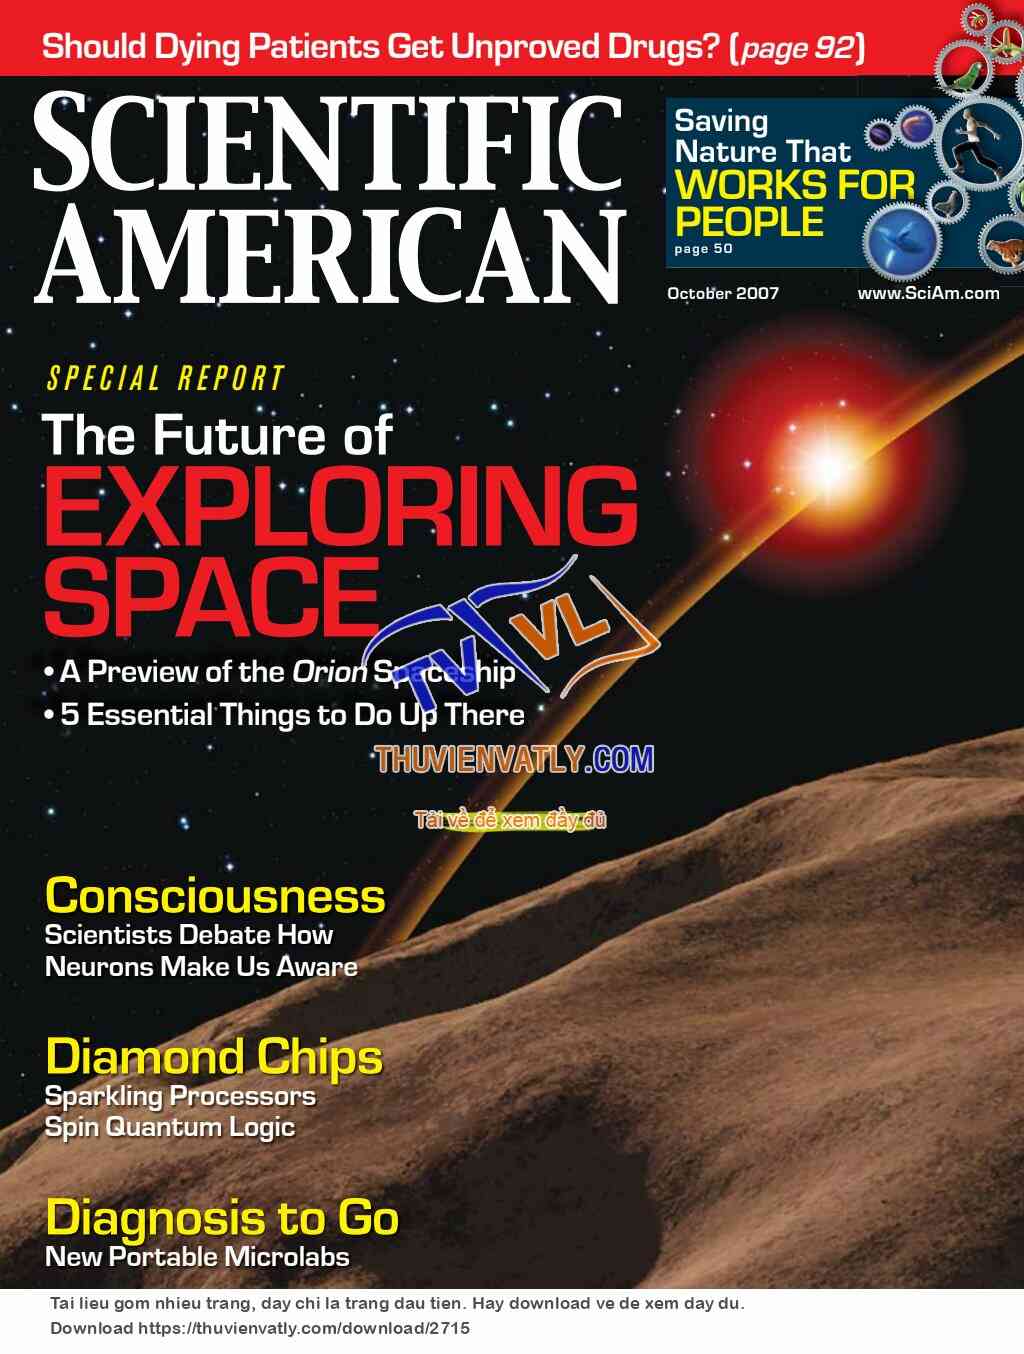 Tạp chí Scientific American, số tháng 10/2007